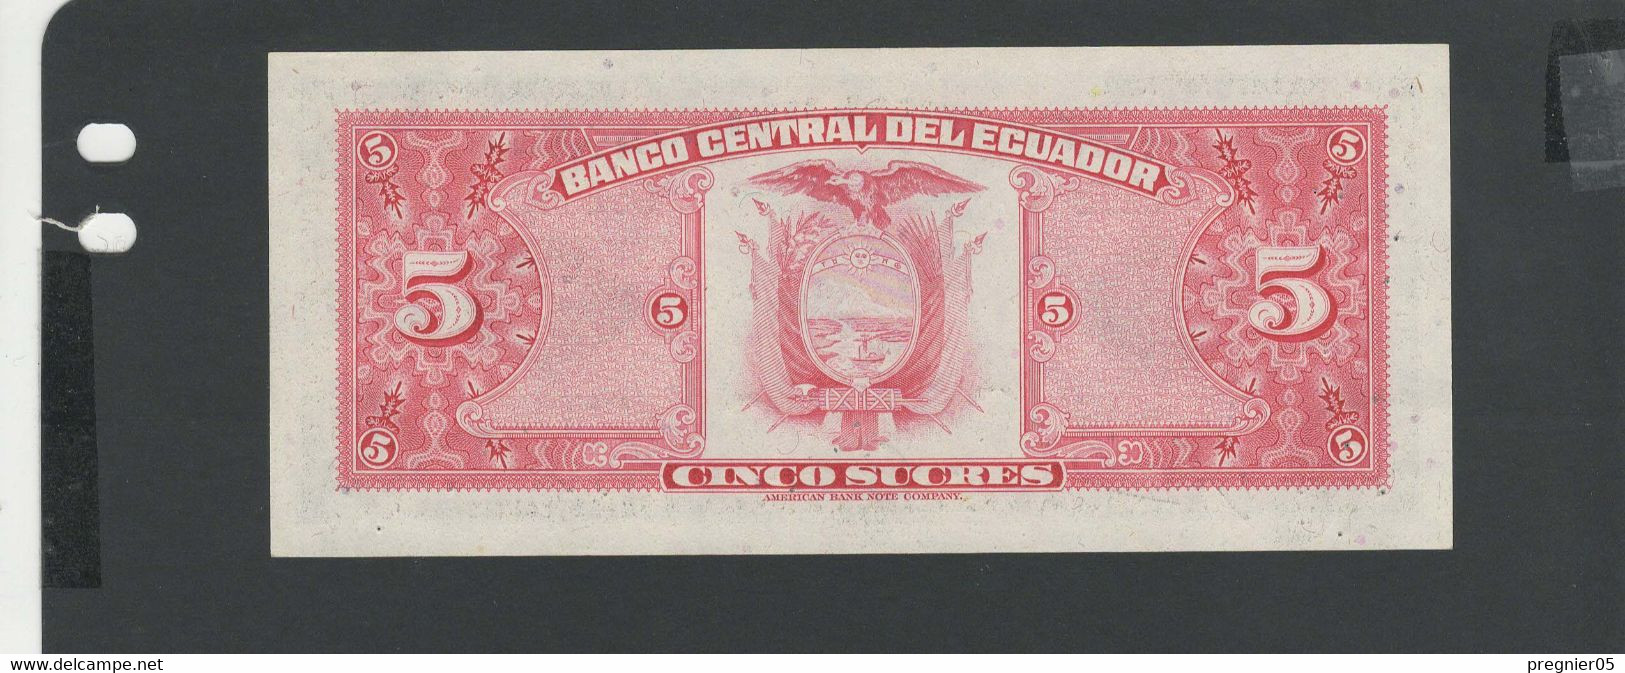 EQUATEUR - Billet 5 Sucres 1977 NEUF/UNC Gad.108 - Ecuador